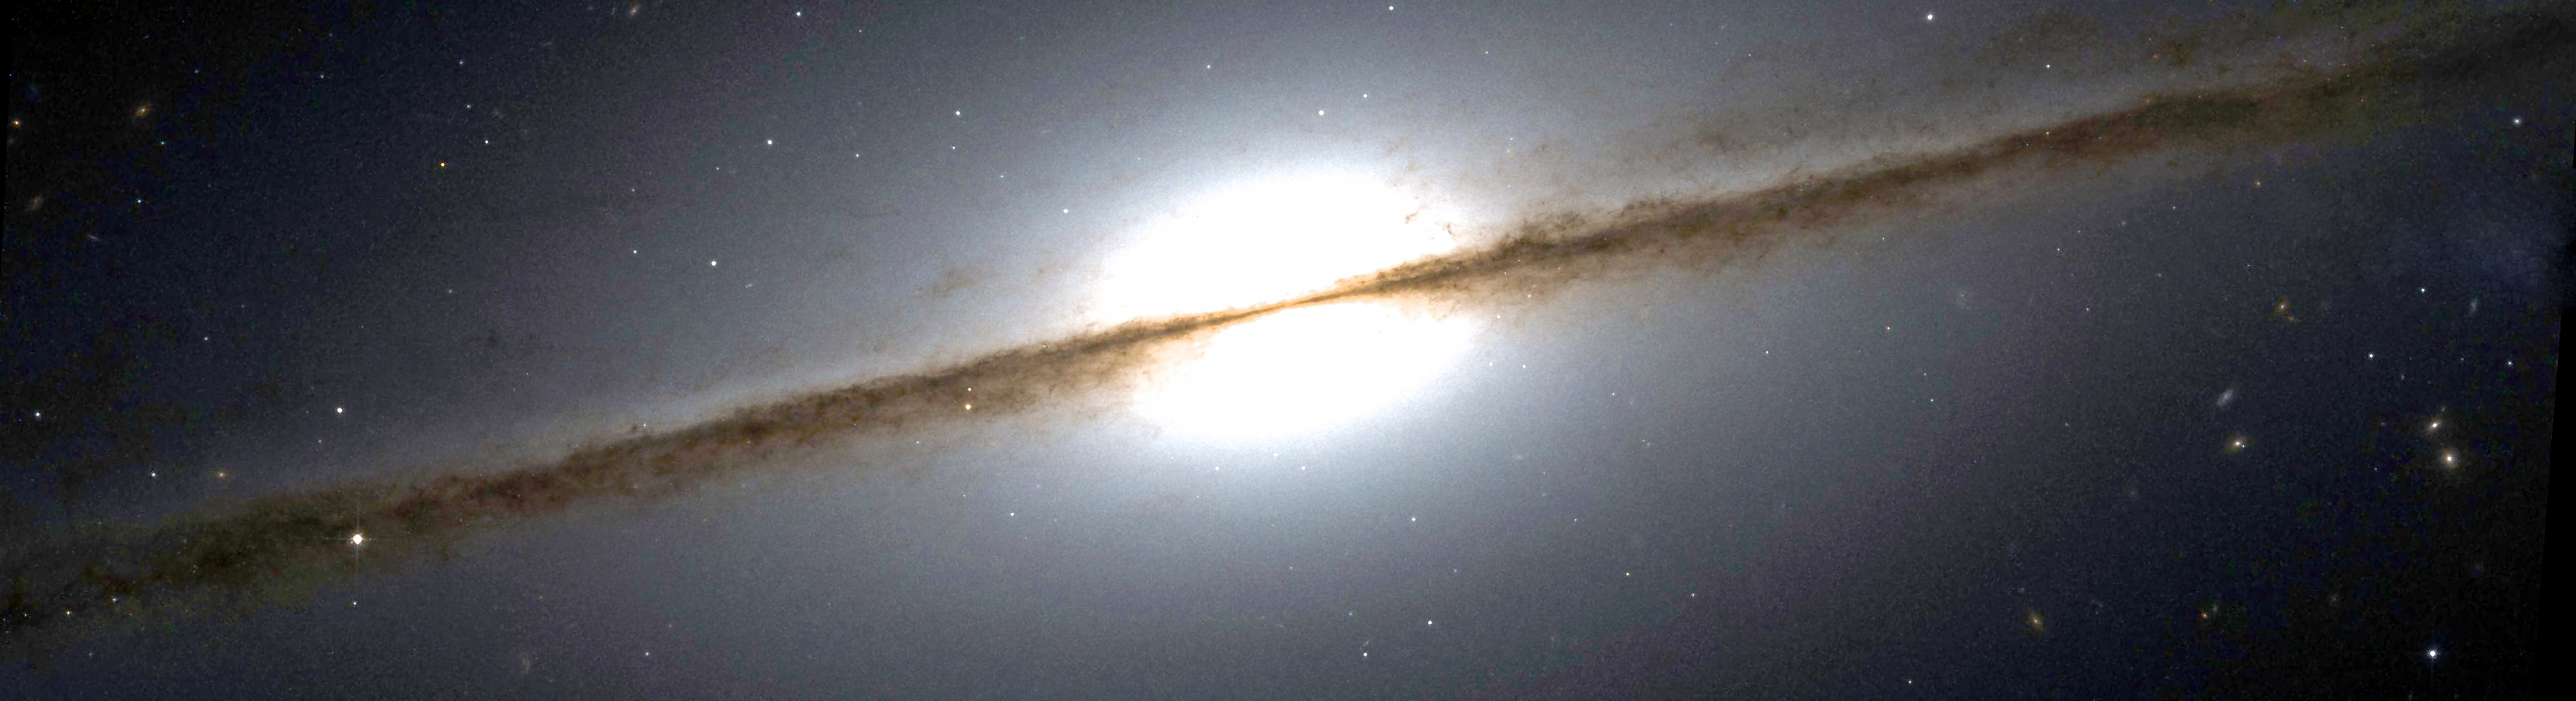 NGC 7814 Hubble WikiSky